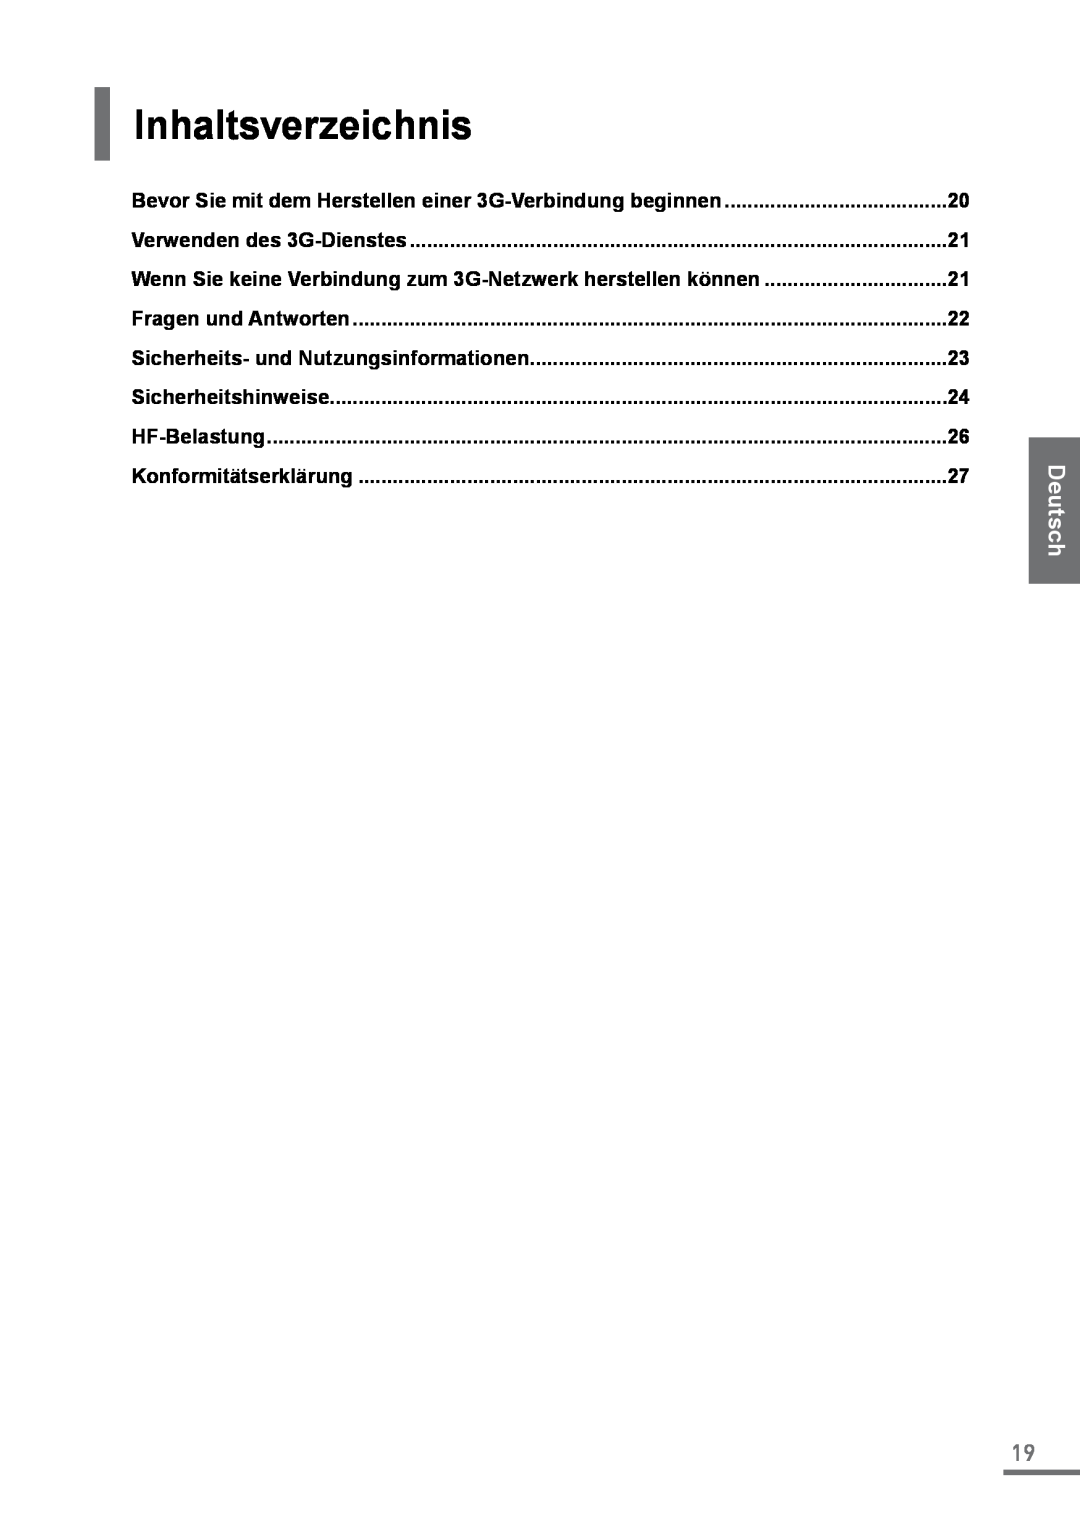 Samsung XE500C21-A01ES Inhaltsverzeichnis, Deutsch, Handbuch, Bevor Sie mit dem Herstellen einer 3G-Verbindung beginnen 